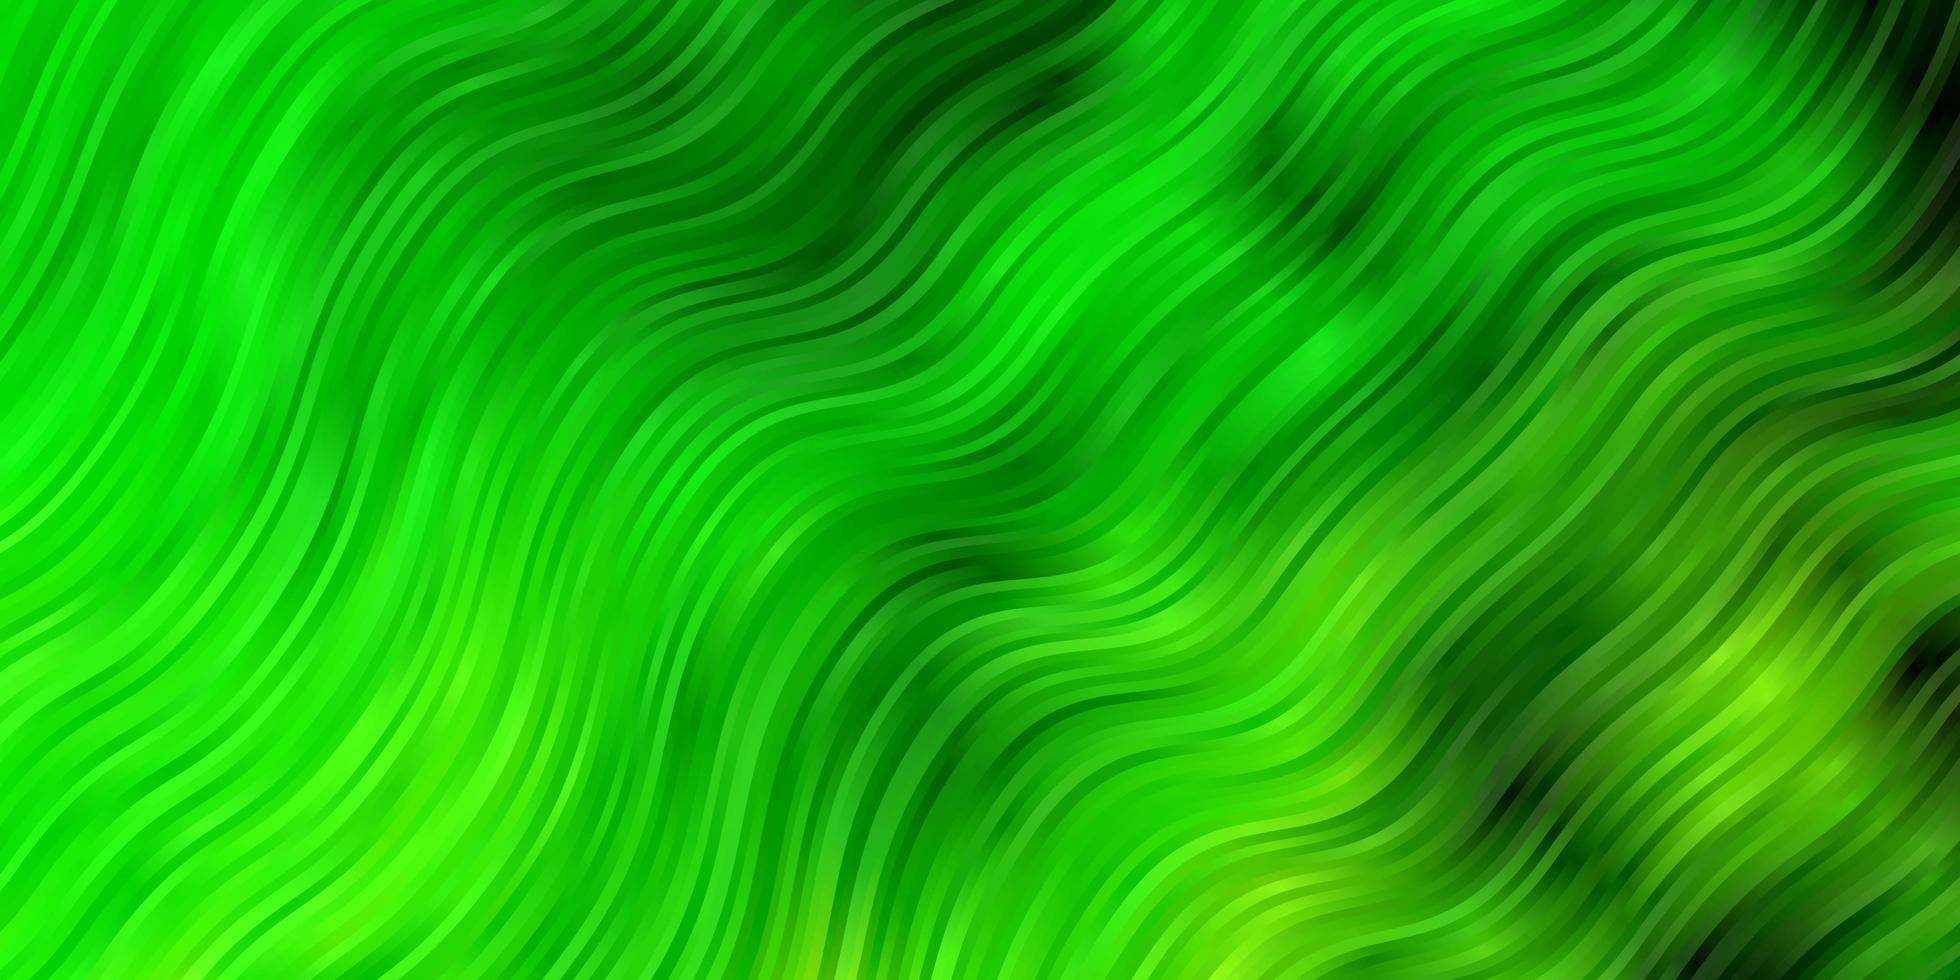 ljusgrön bakgrund med bågar. vektor